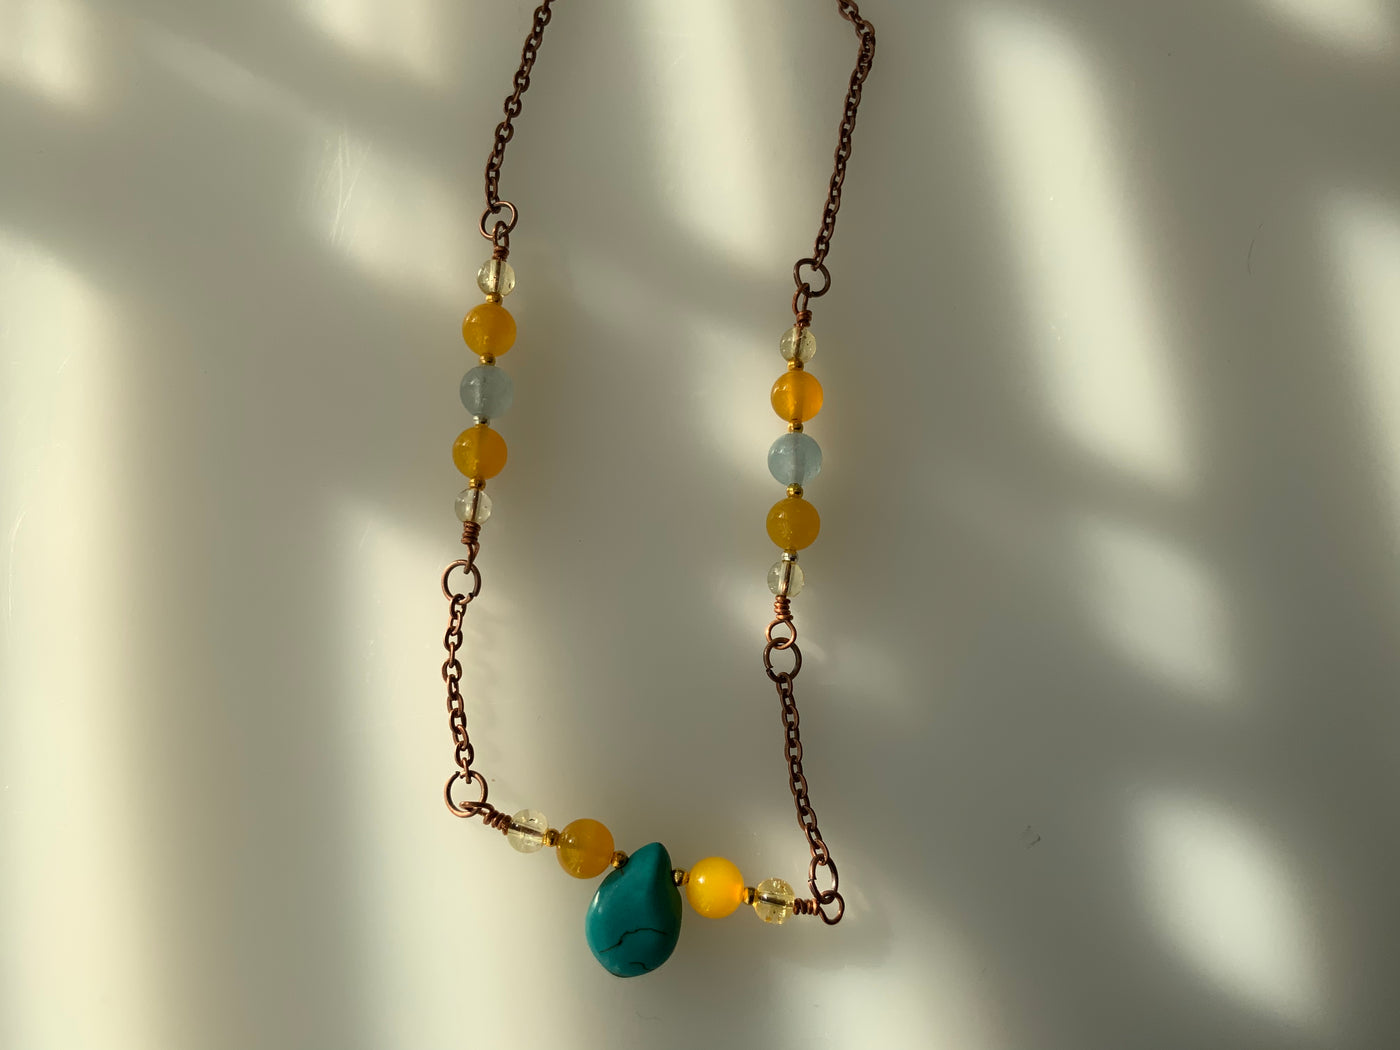 Halskette: Gelber Achat, blaue Howlith-Briolette sowie Quarzdraht und -kette